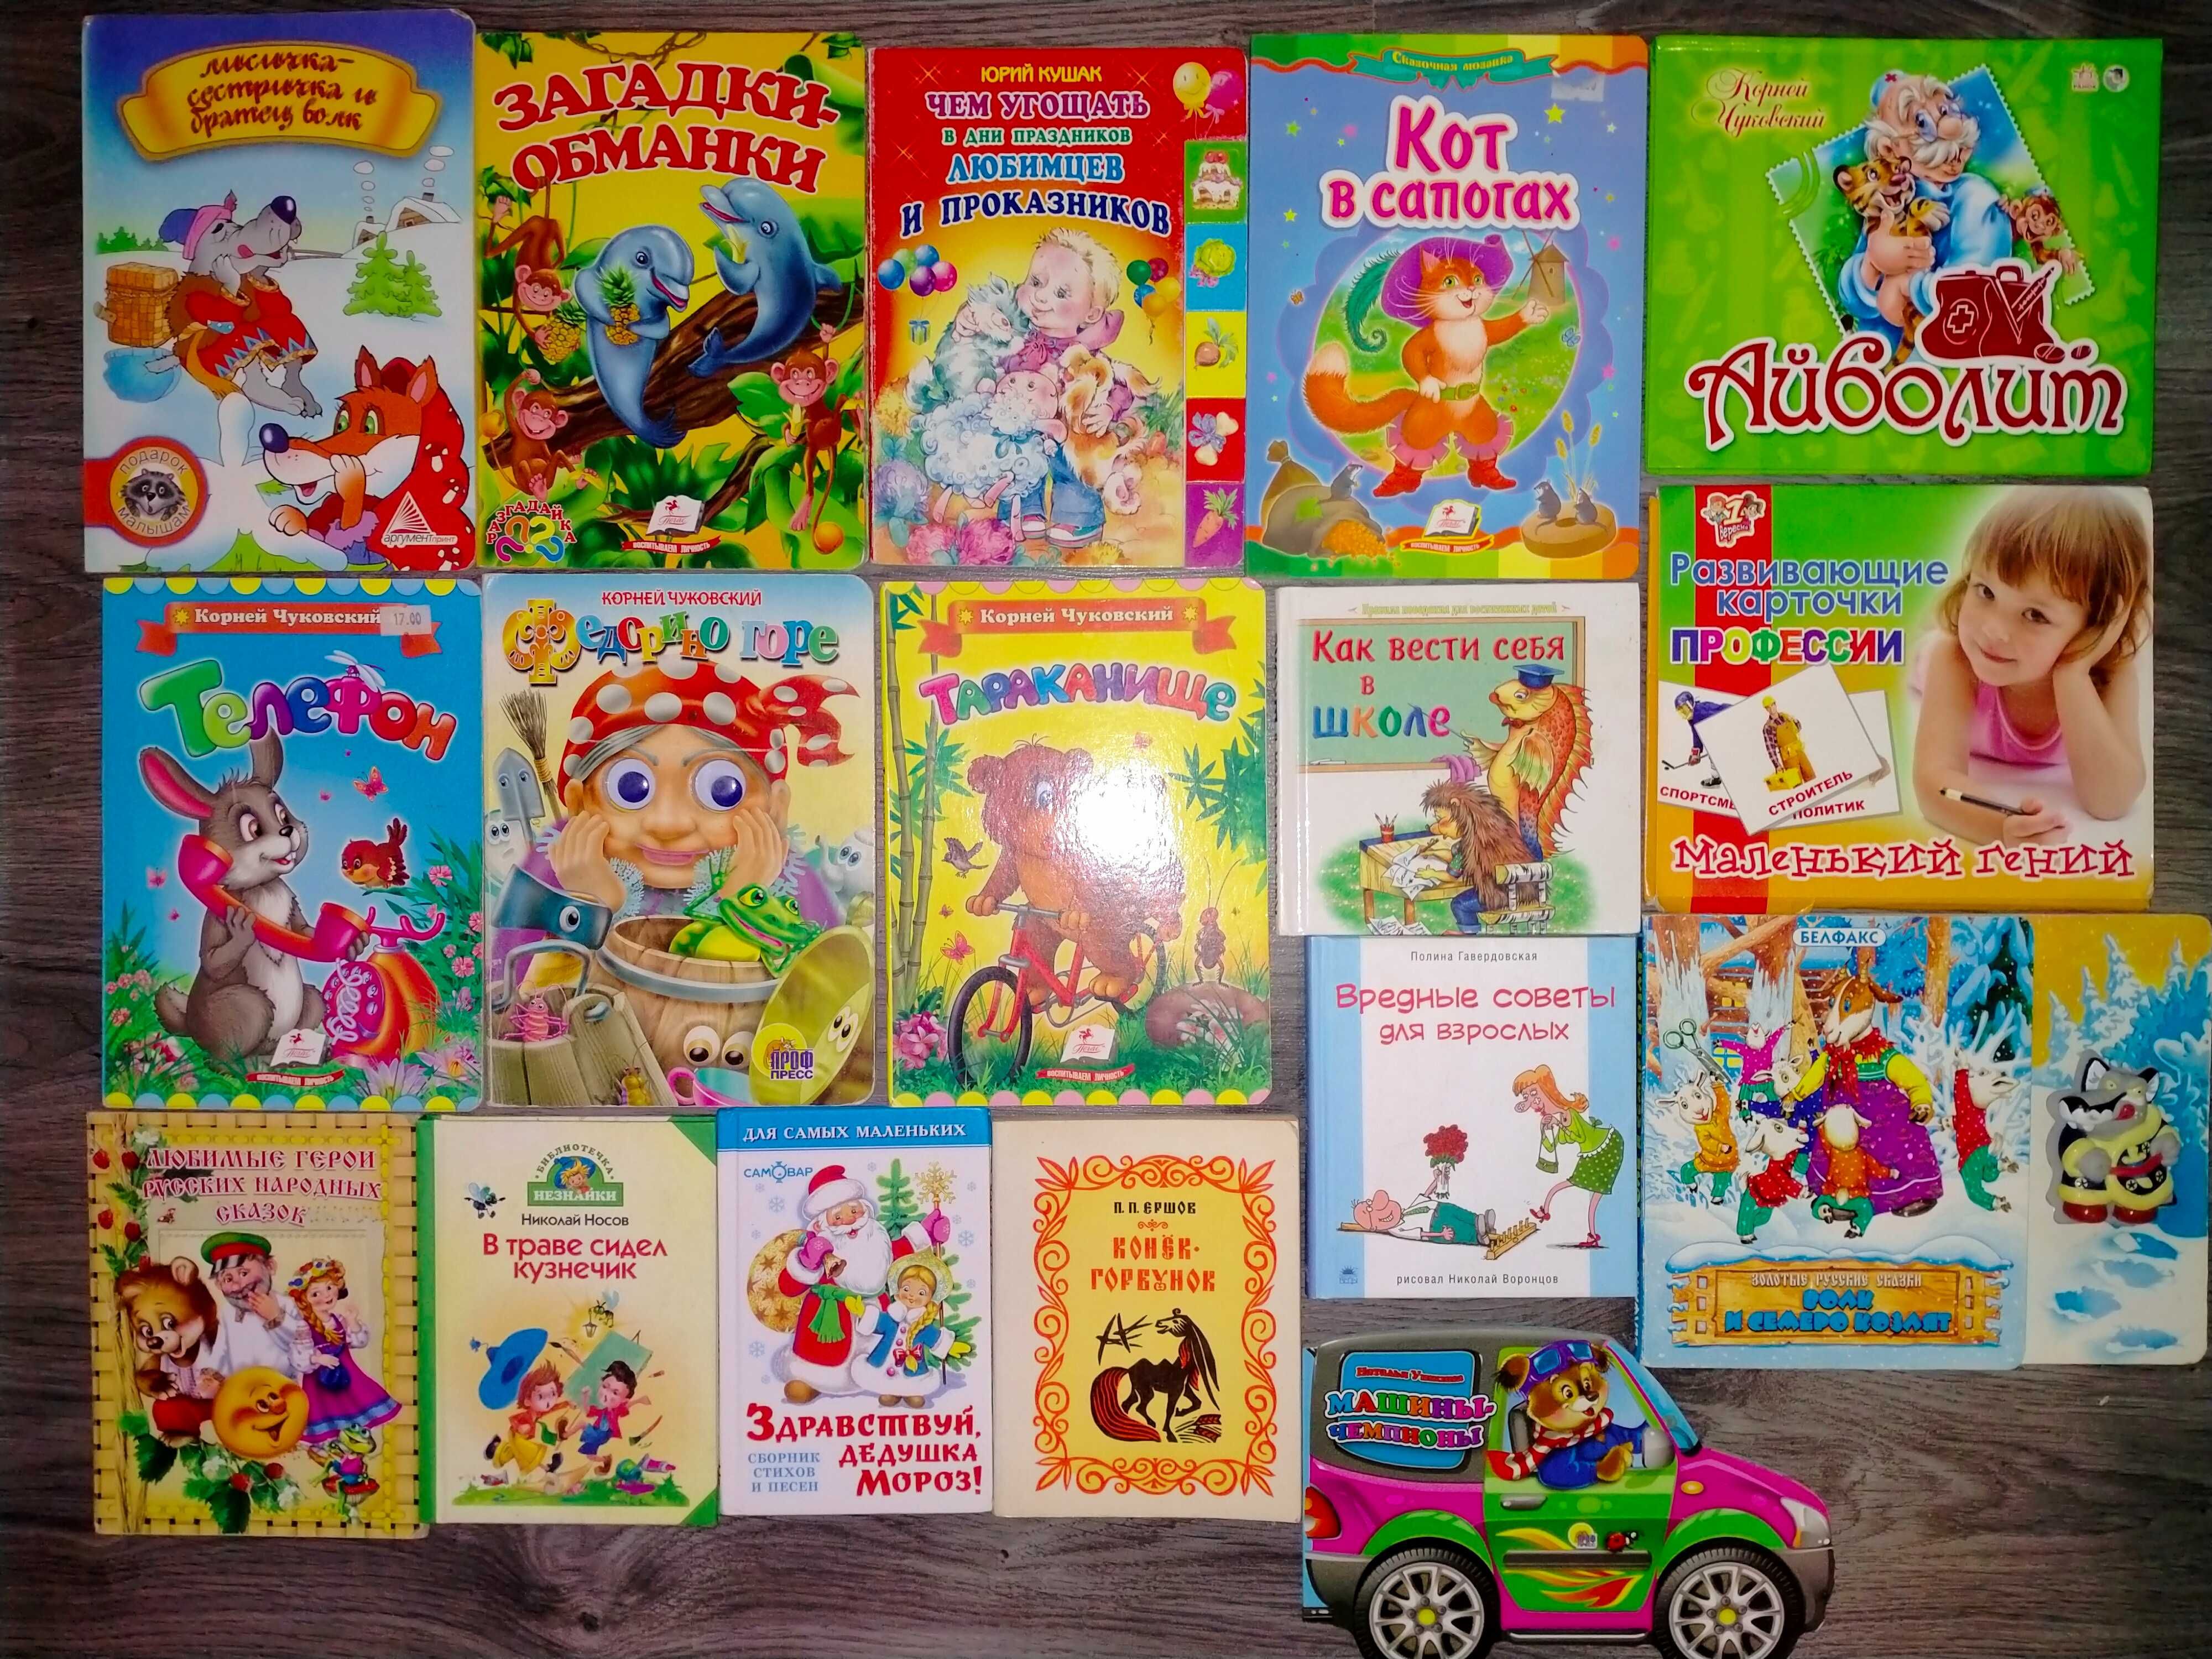 Книги картонки і інші для дітей ( біля 100книг)